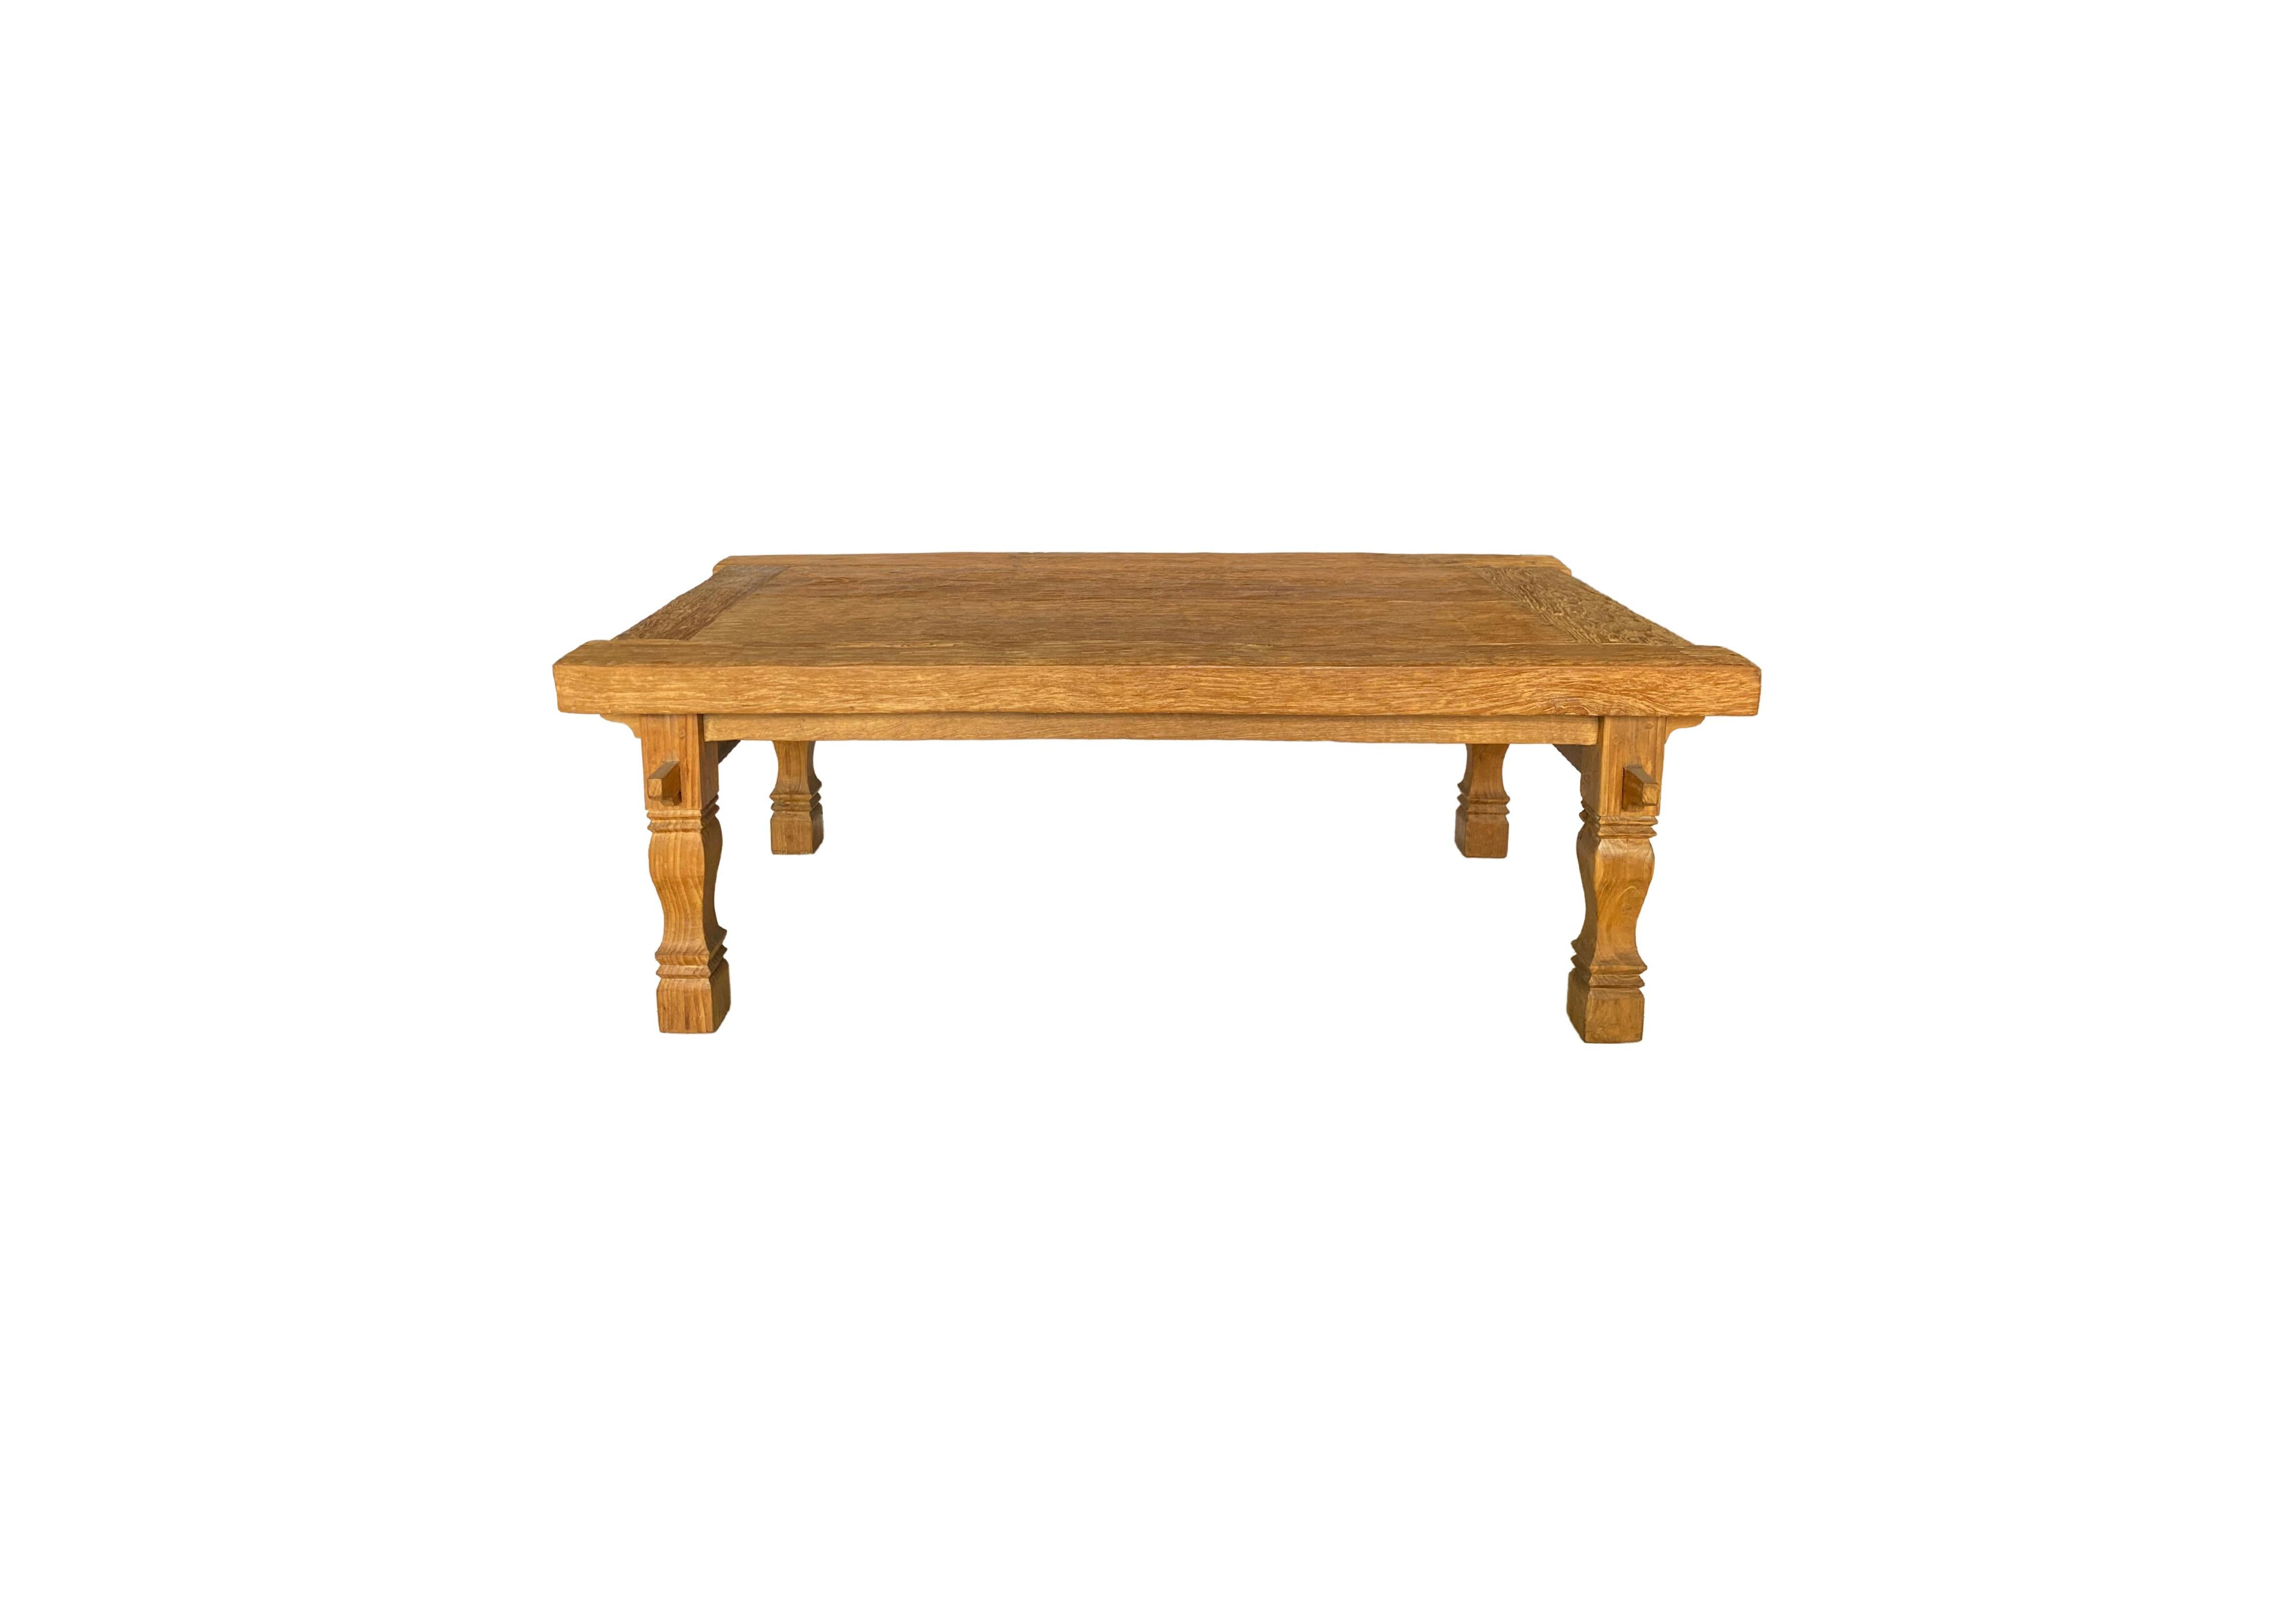 Organic Modern Organic Teak Wood Table with Stunning Wood Pattern Detailing